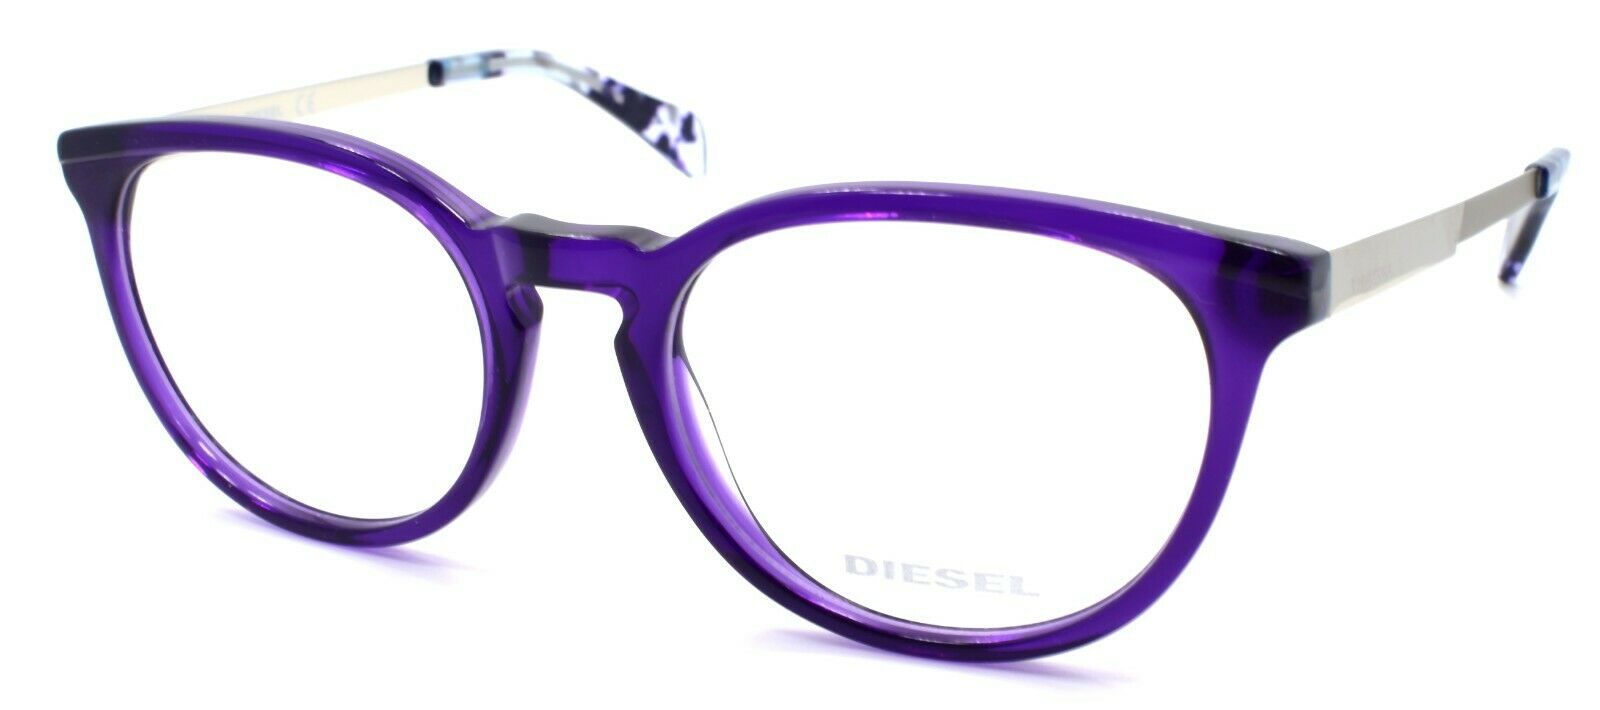 1-Diesel DL5150 092 Women's Eyeglasses Frames 50-18-140 Violet-664689707508-IKSpecs